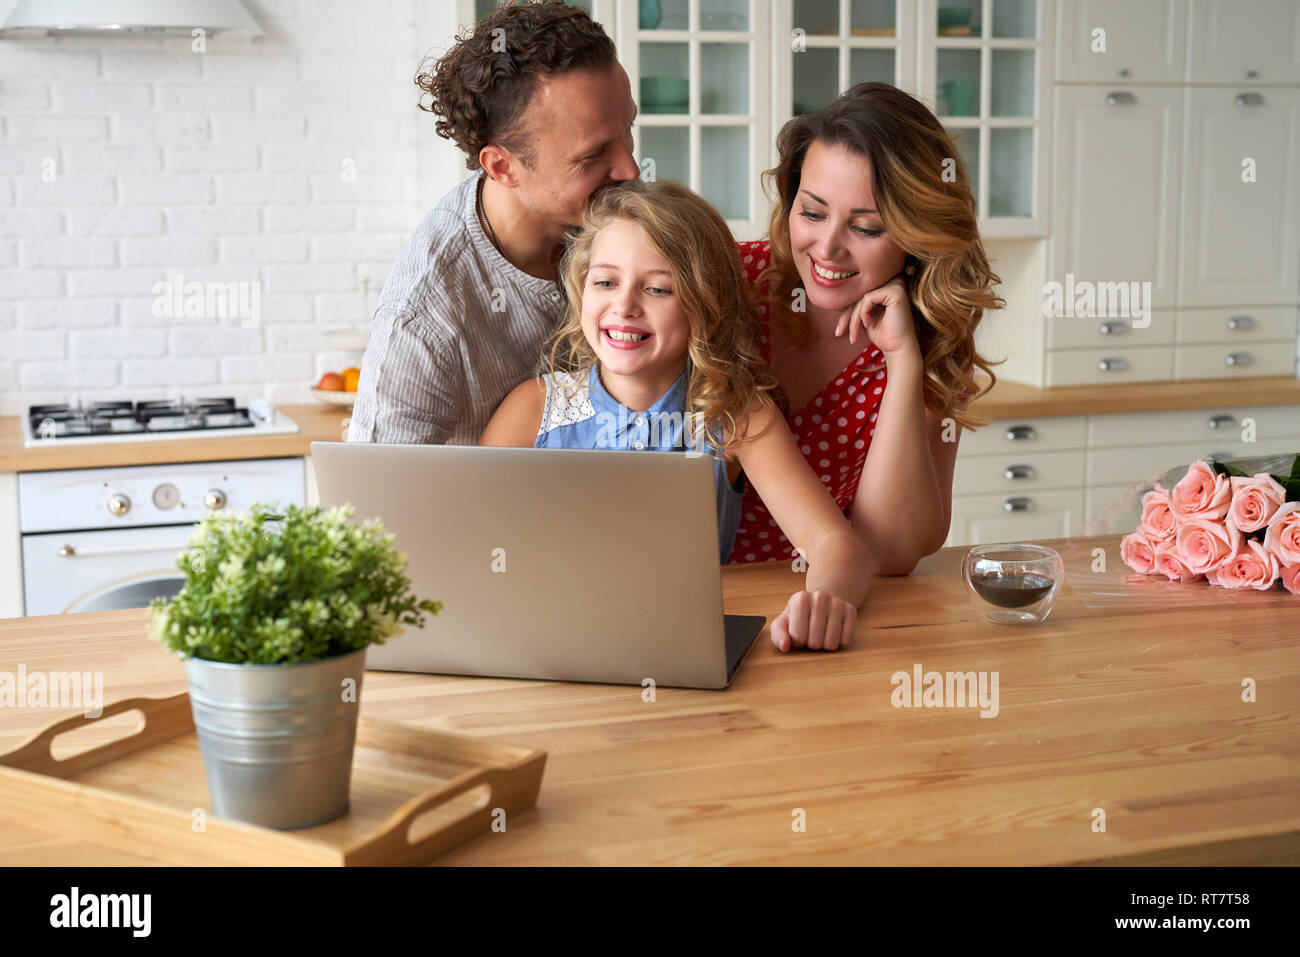 Junge, glückliche Familie im Internet surfen mit Laptop am Tisch in der Küche Stockfoto